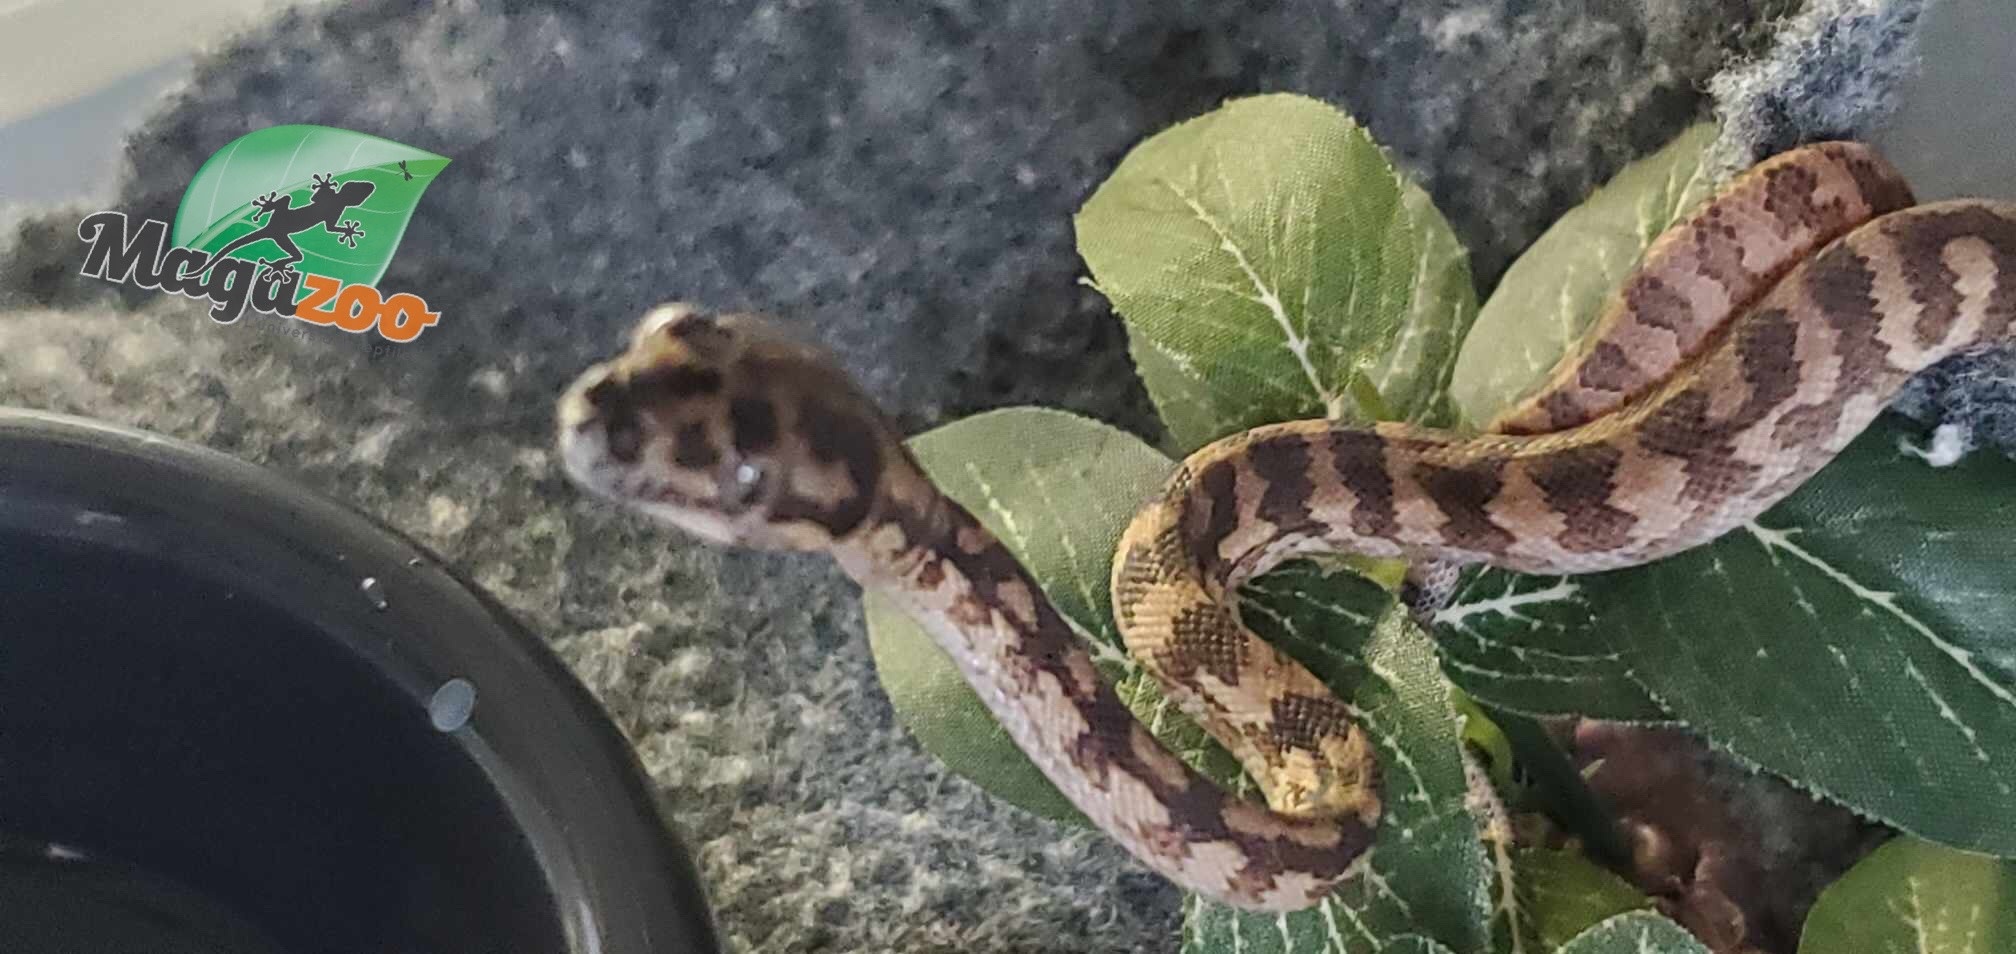 Magazoo Python tapis Irian Jaya Bébé femelle  (66% poss. het.Ganite, 66% poss. het. Albino)